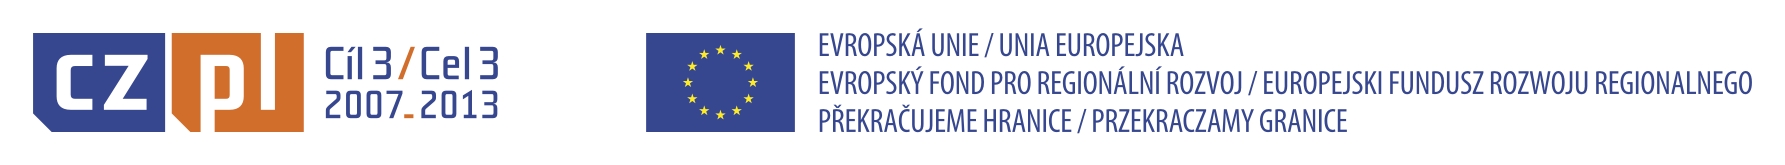 logotyp CZ-PL a symboly EU s texty (plnobarevn)